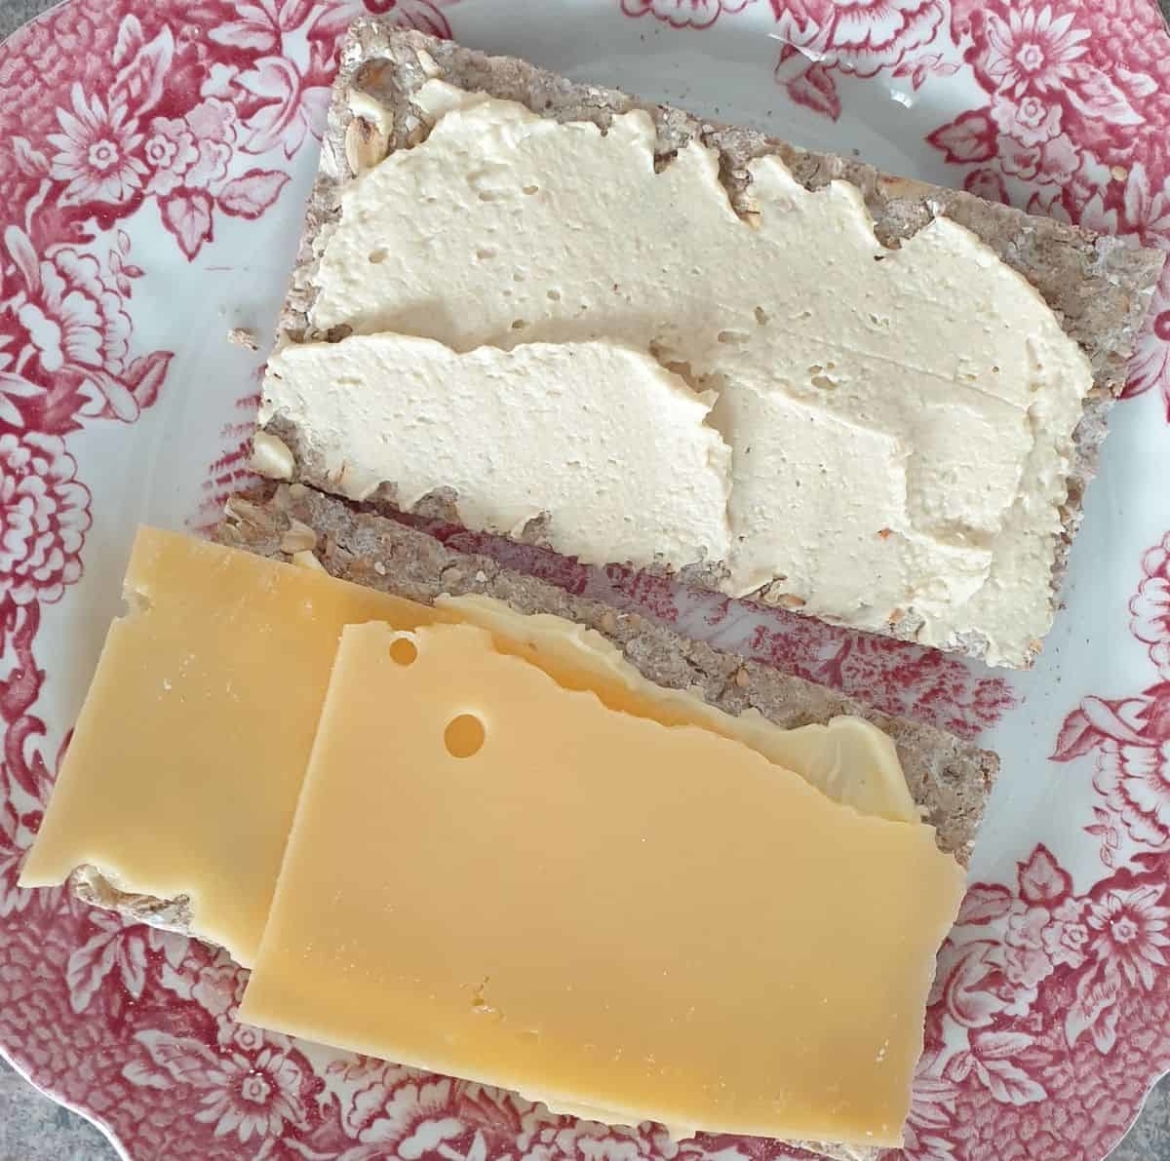 Vezelrijke crackers met humus en oude kaas